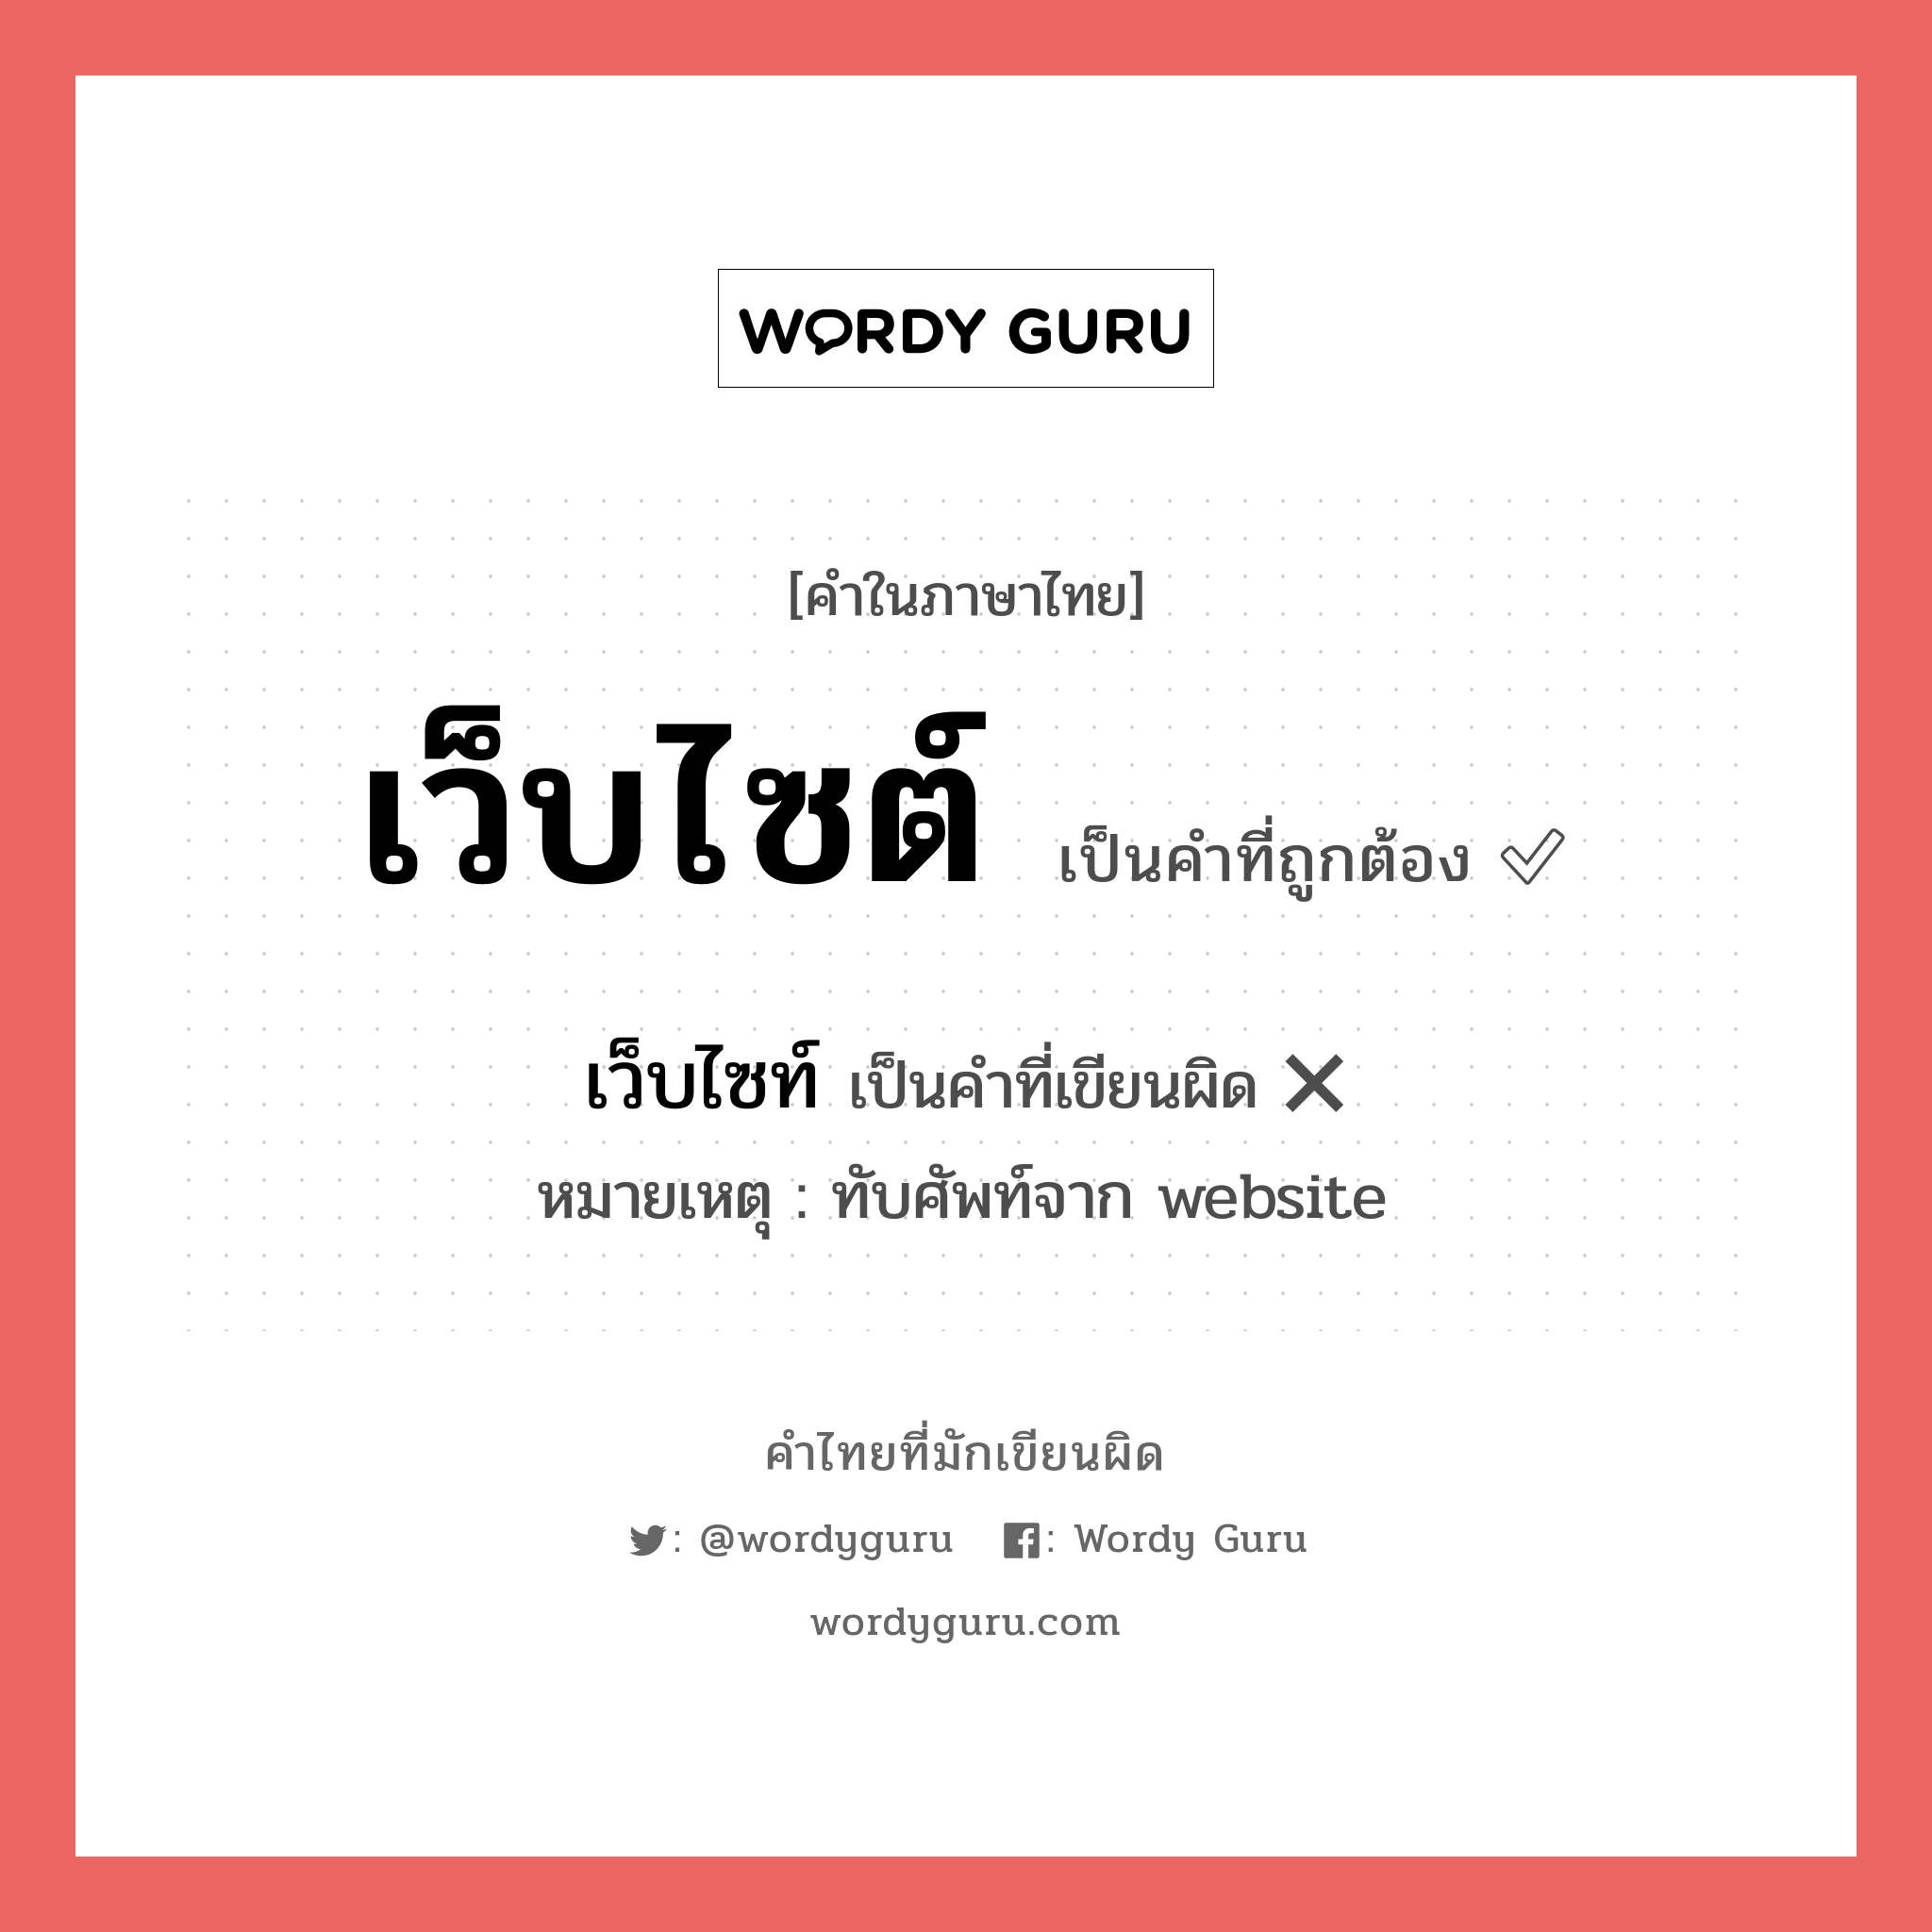 เว็บไซต์ หรือ เว็บไซท์ เขียนยังไง? คำไหนเขียนถูก?, คำในภาษาไทยที่มักเขียนผิด เว็บไซต์ คำที่ผิด ❌ เว็บไซท์ หมายเหตุ ทับศัพท์จาก website